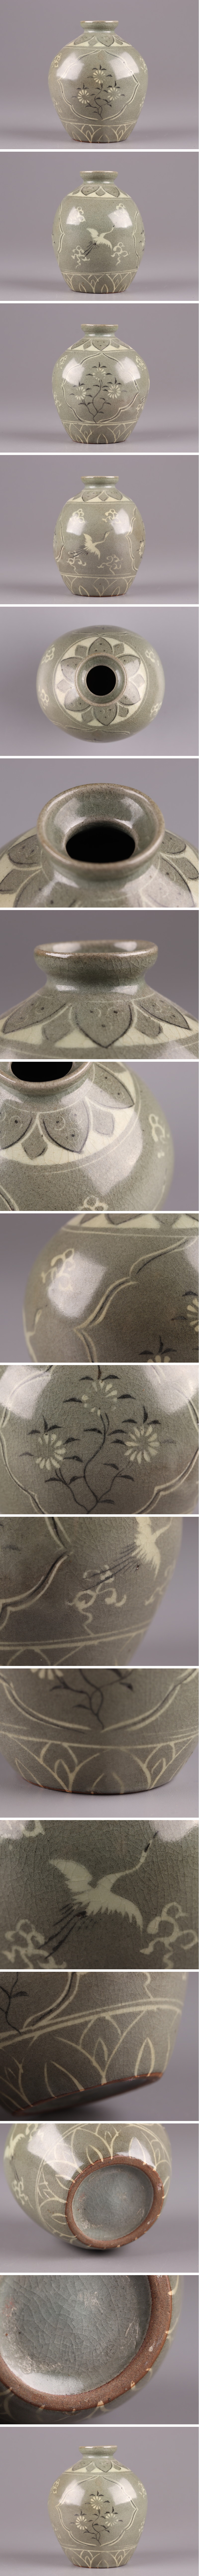 特価NEW古美術 朝鮮古陶磁器 高麗青磁 白黒象嵌 壷 時代物 極上品 初だし品 3261 高麗